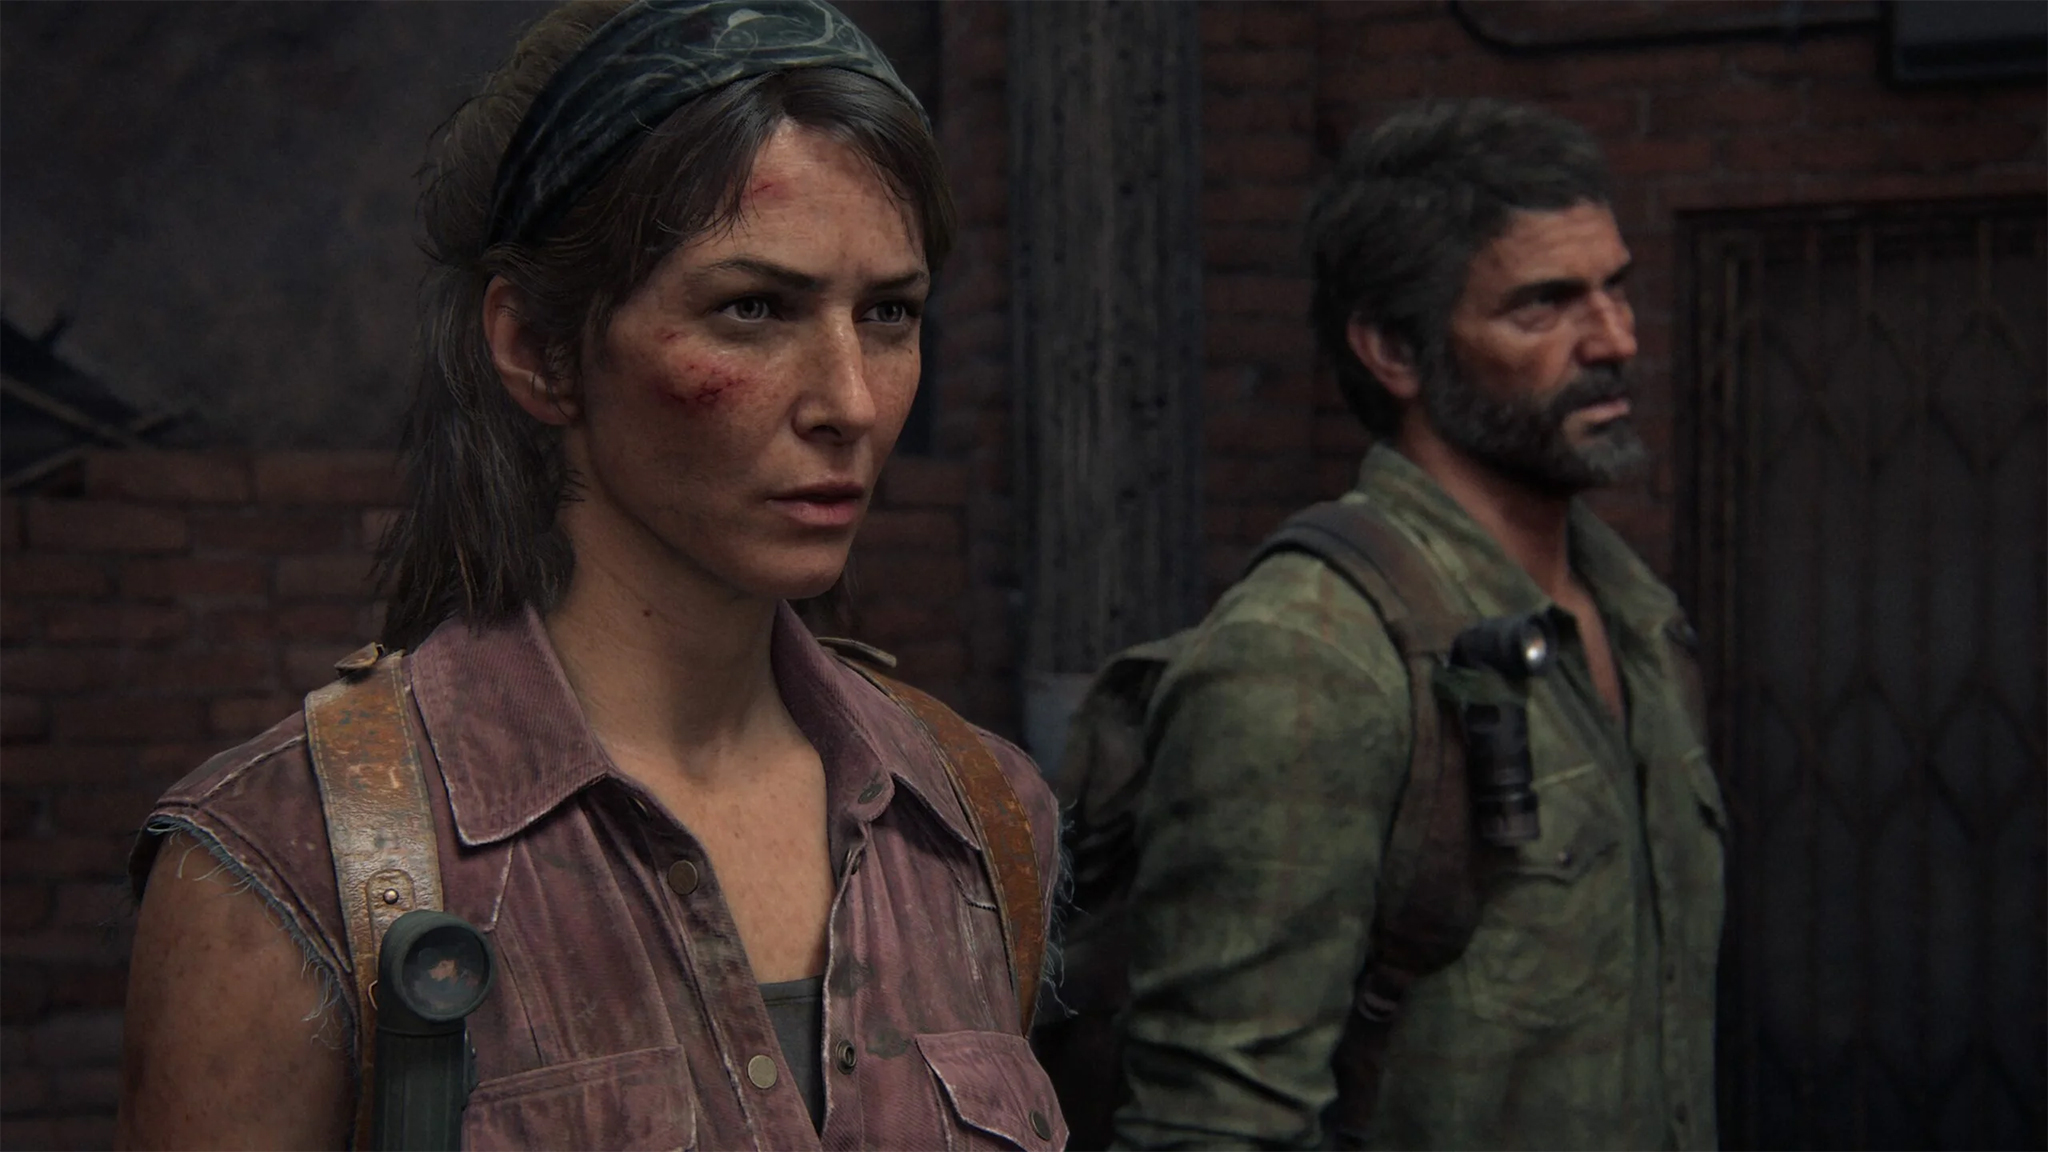 The Last of Us: novo vídeo dos bastidores da série mostra